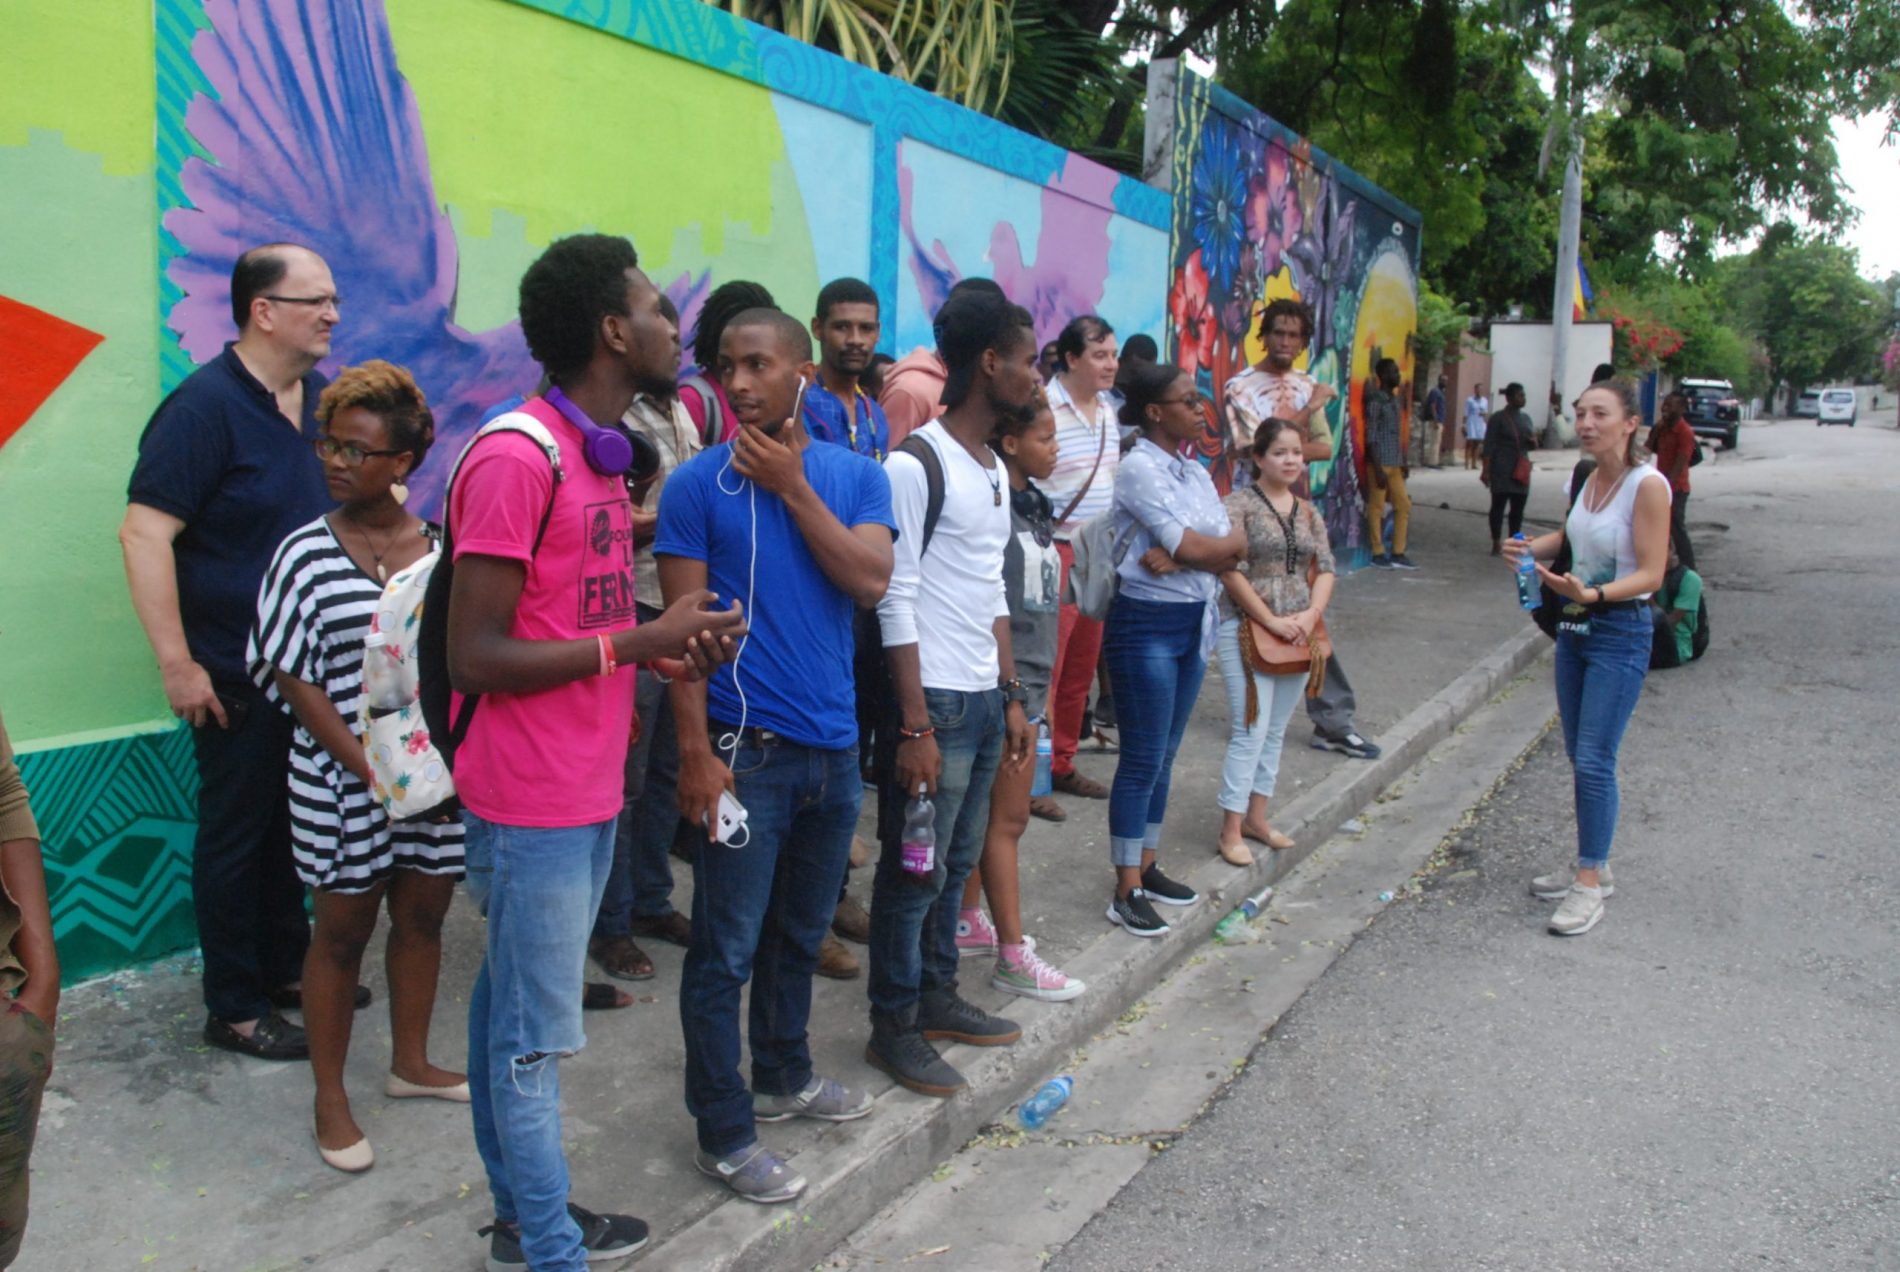 Le street art ne s’est pas laissé intimider par les barricades de Port-au-Prince